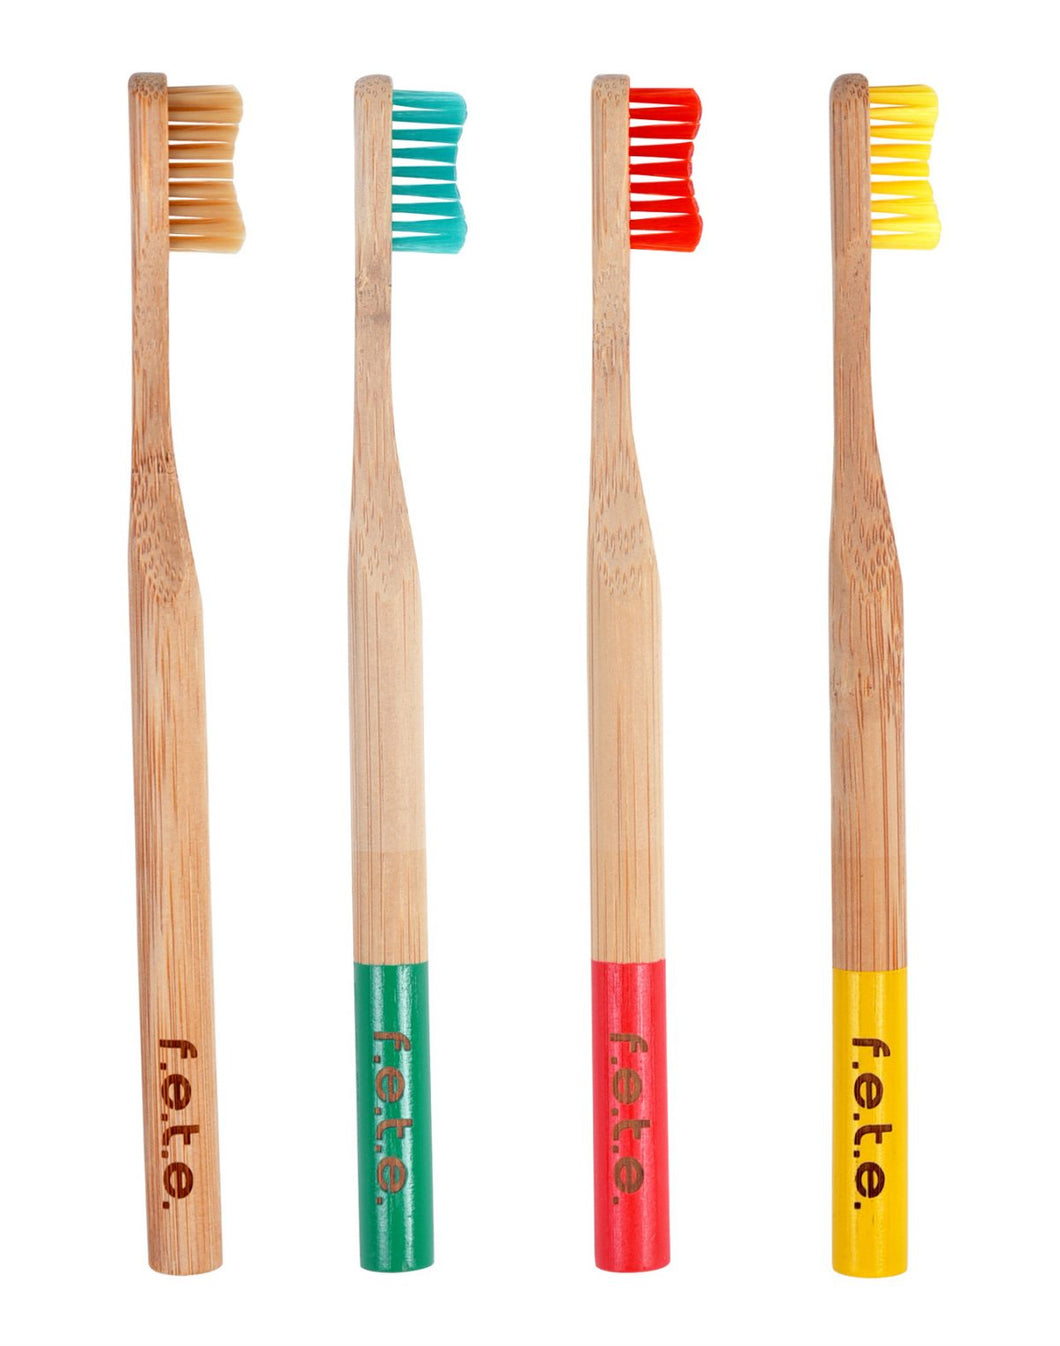 F.E.T.E Toothbrush Family Pack